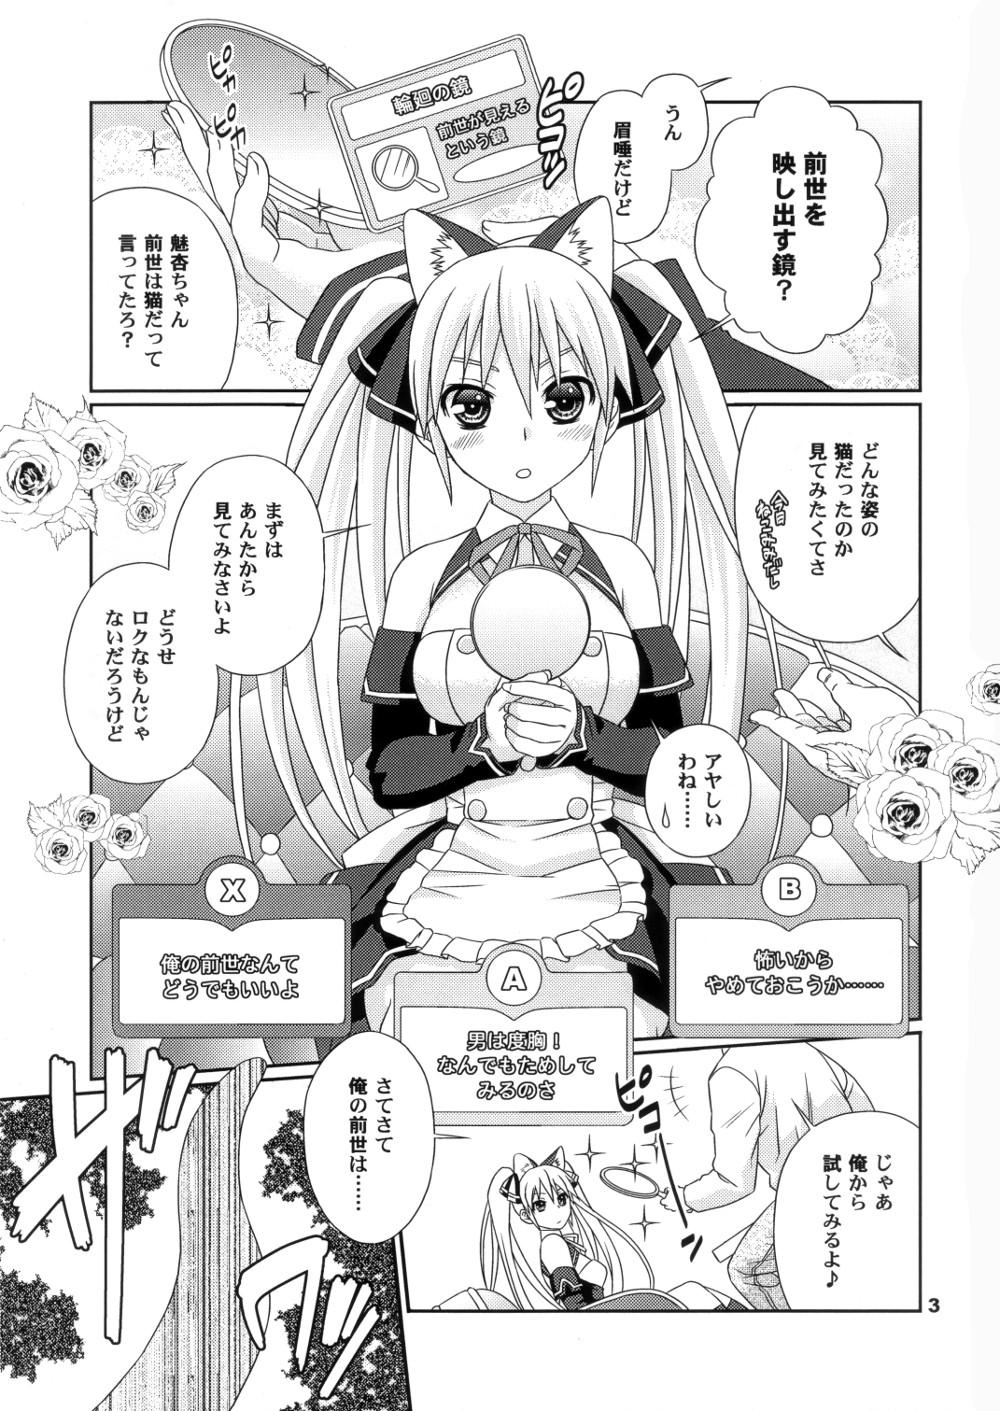 Pica Yume ga Kanattara Ii na! Zenkokuban - Dream c club Fun - Page 2